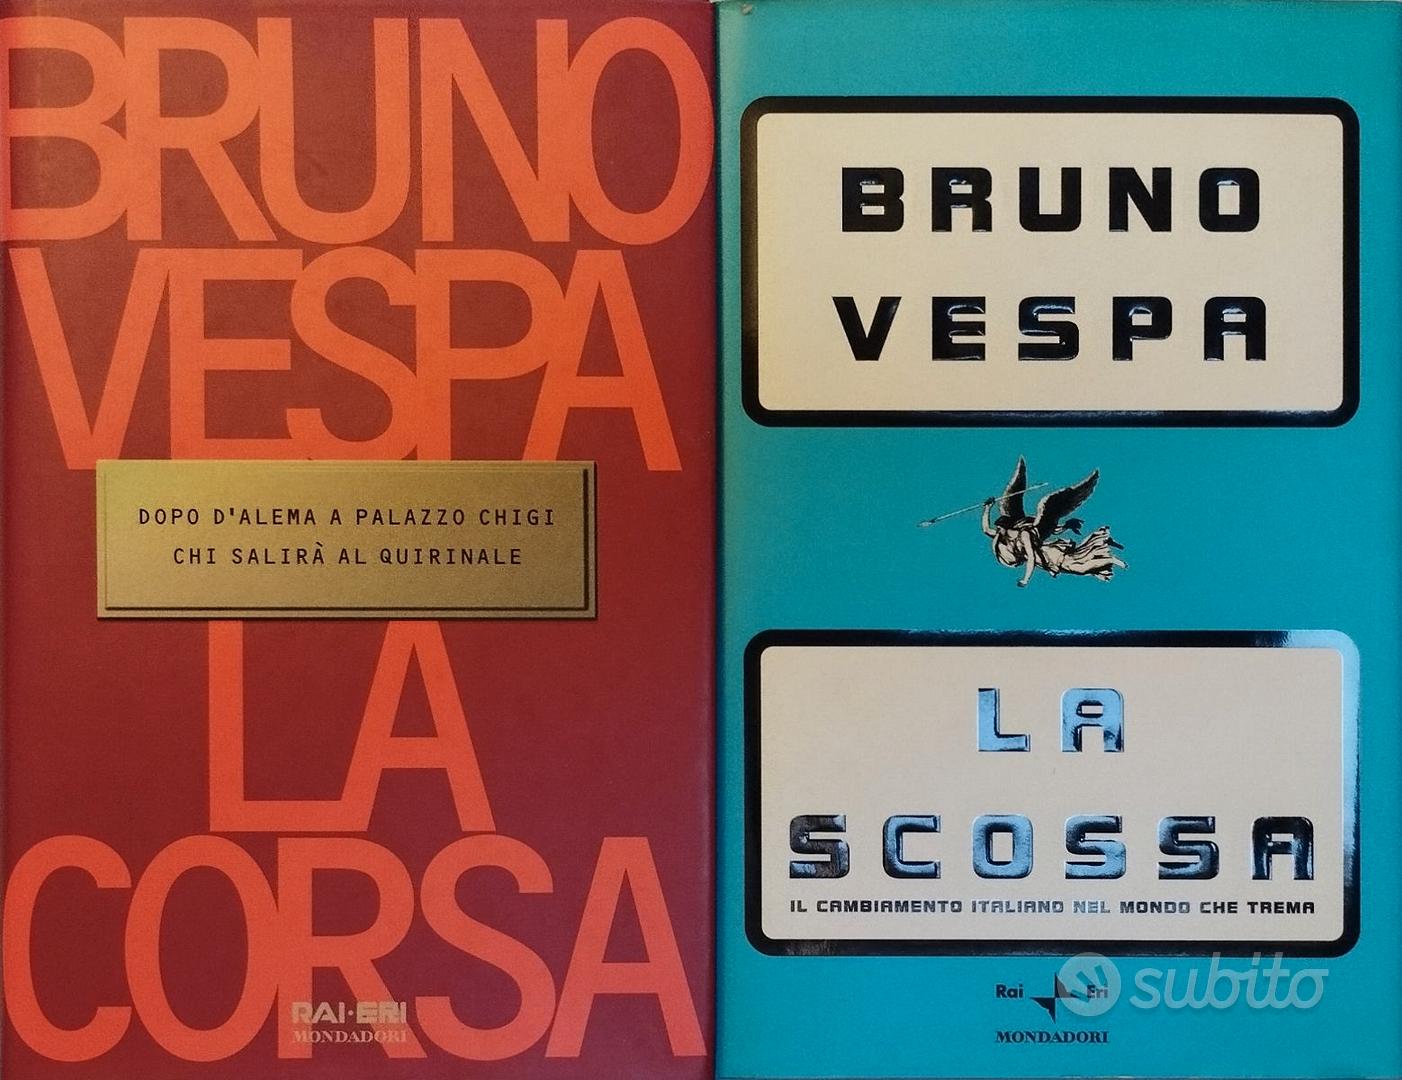 Regina ROSSA - Libri e Riviste In vendita a Ancona